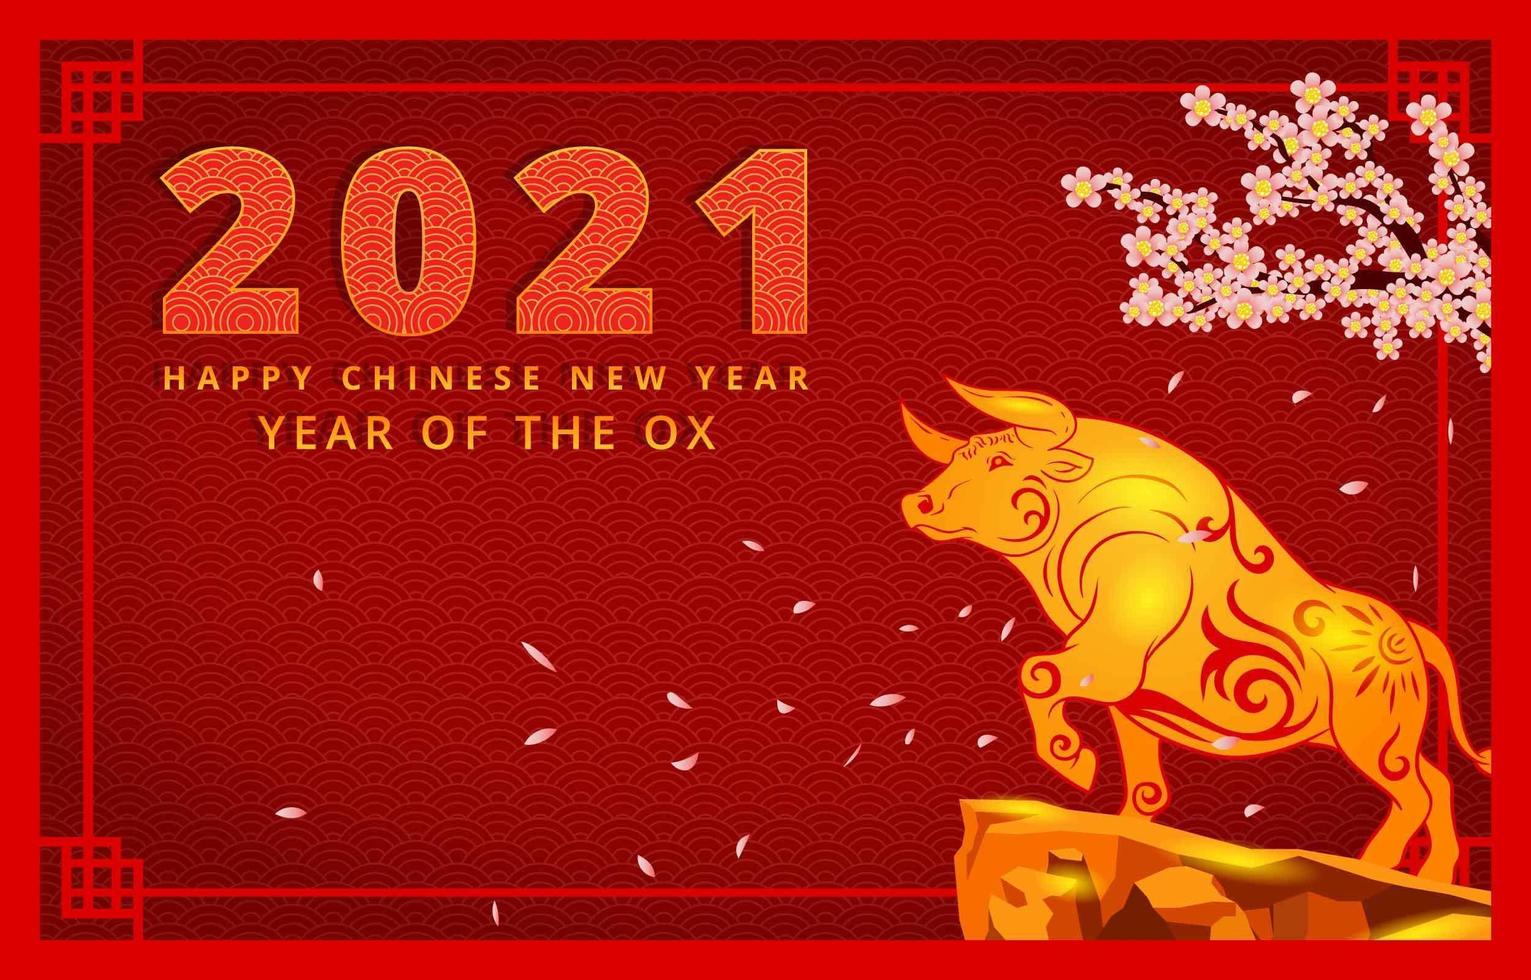 año nuevo chino del buey vector